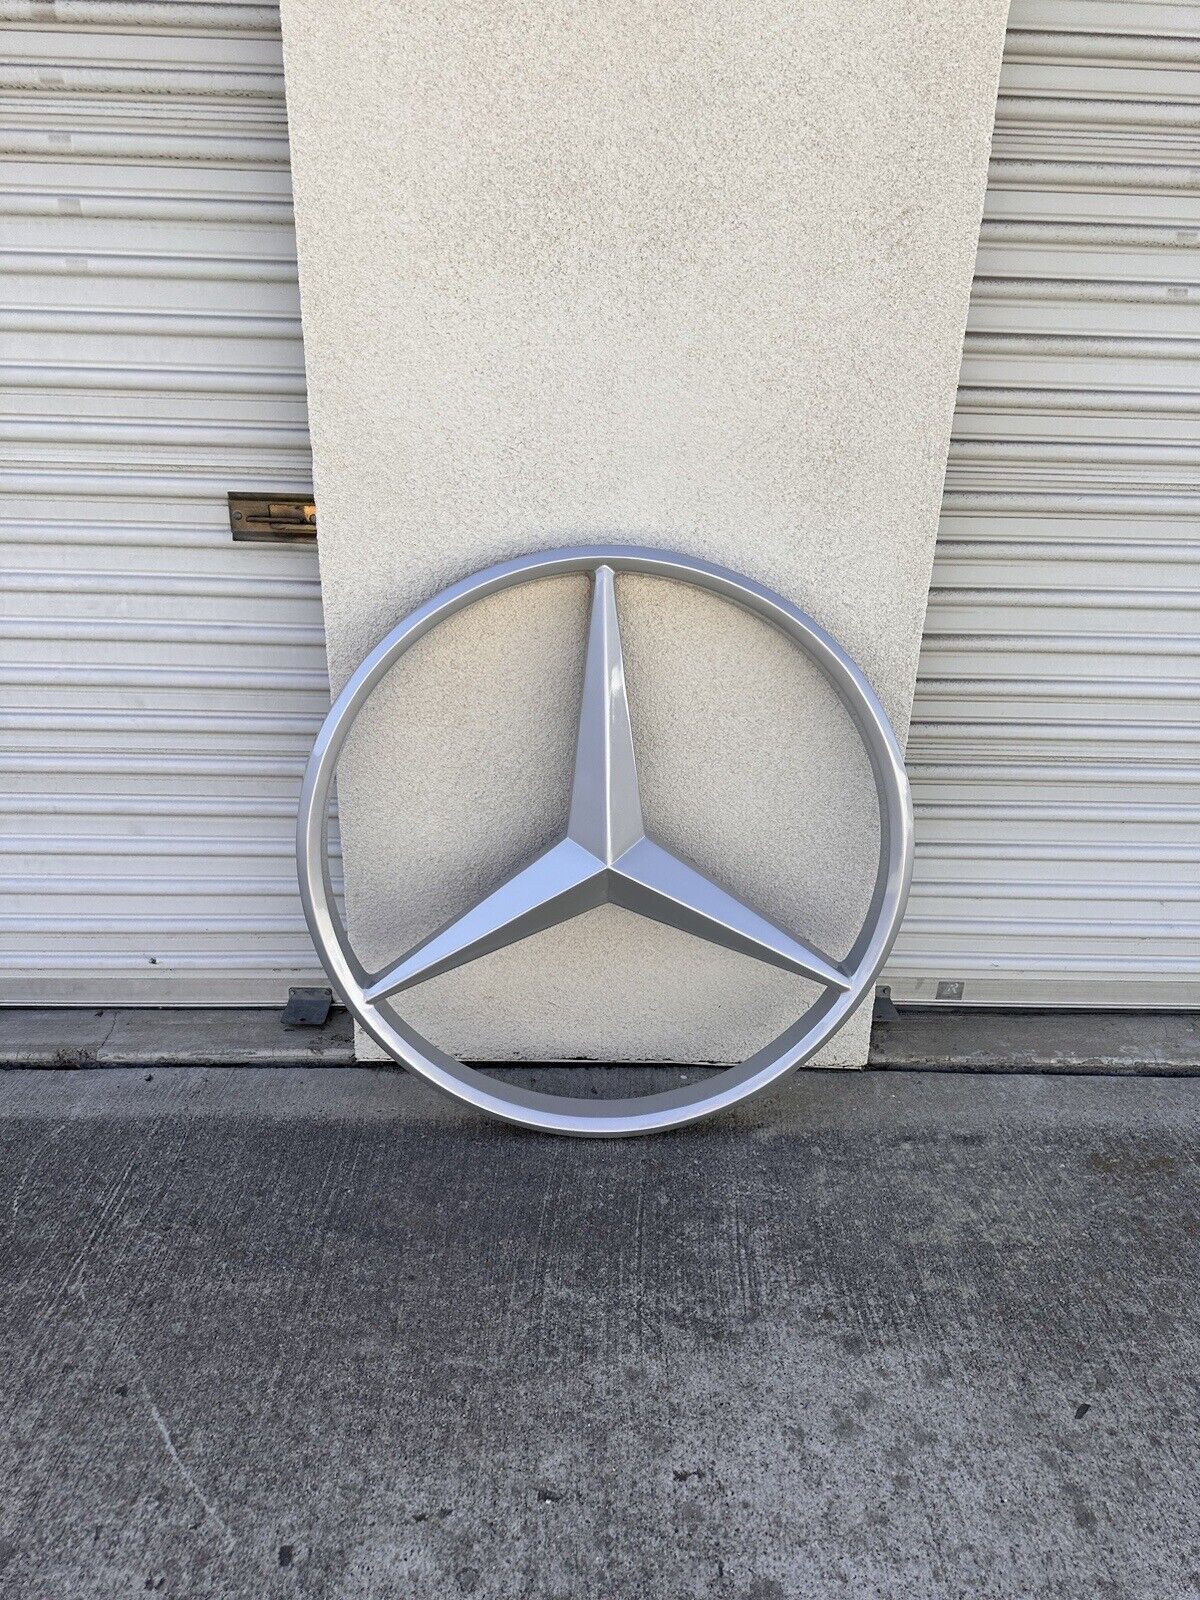 Mercedes-Benz Dealership Sign 38” Round